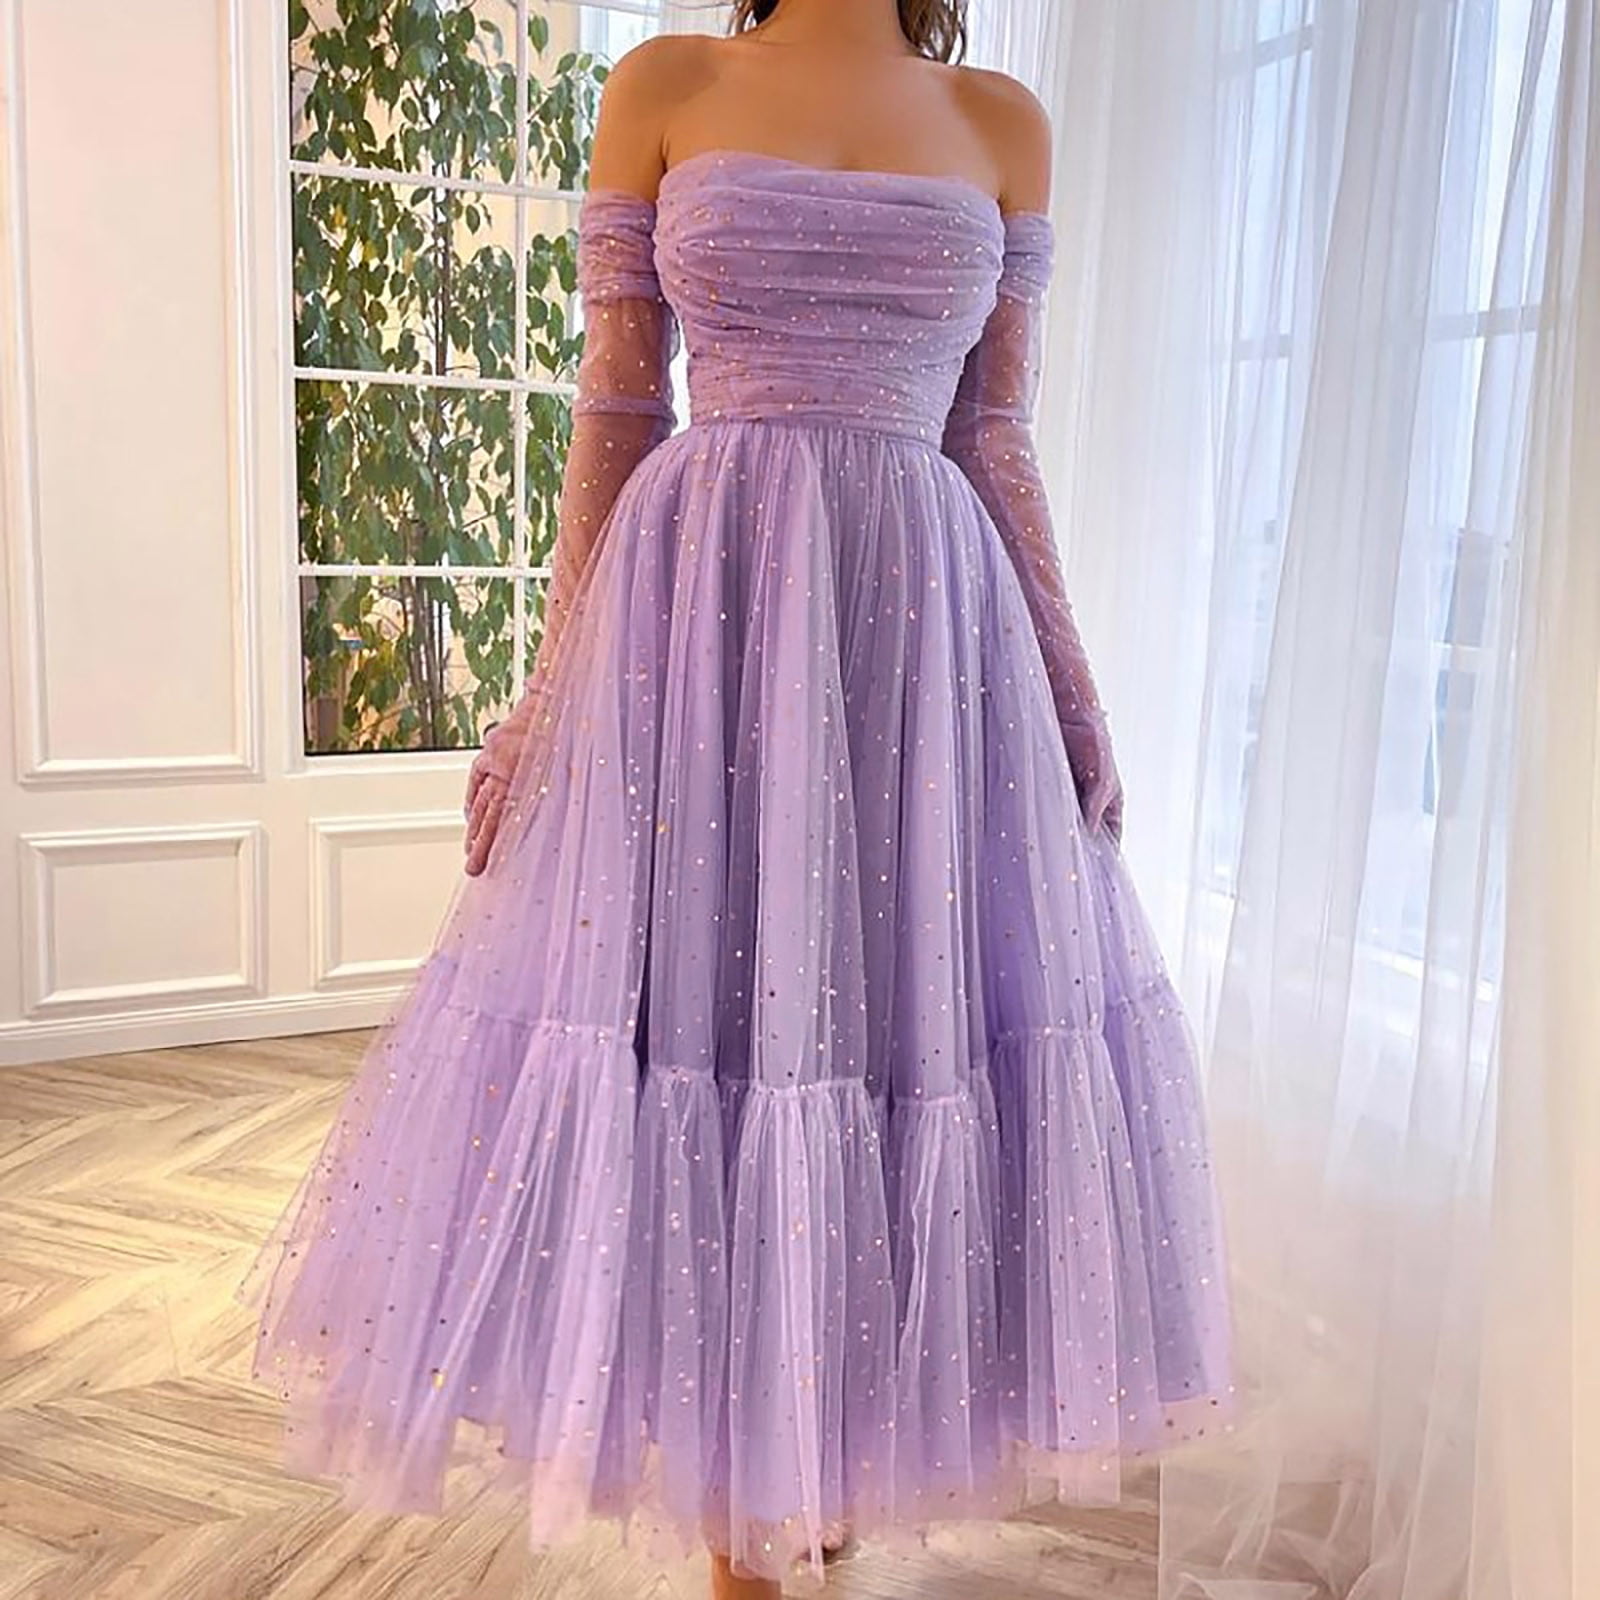 dress long purple